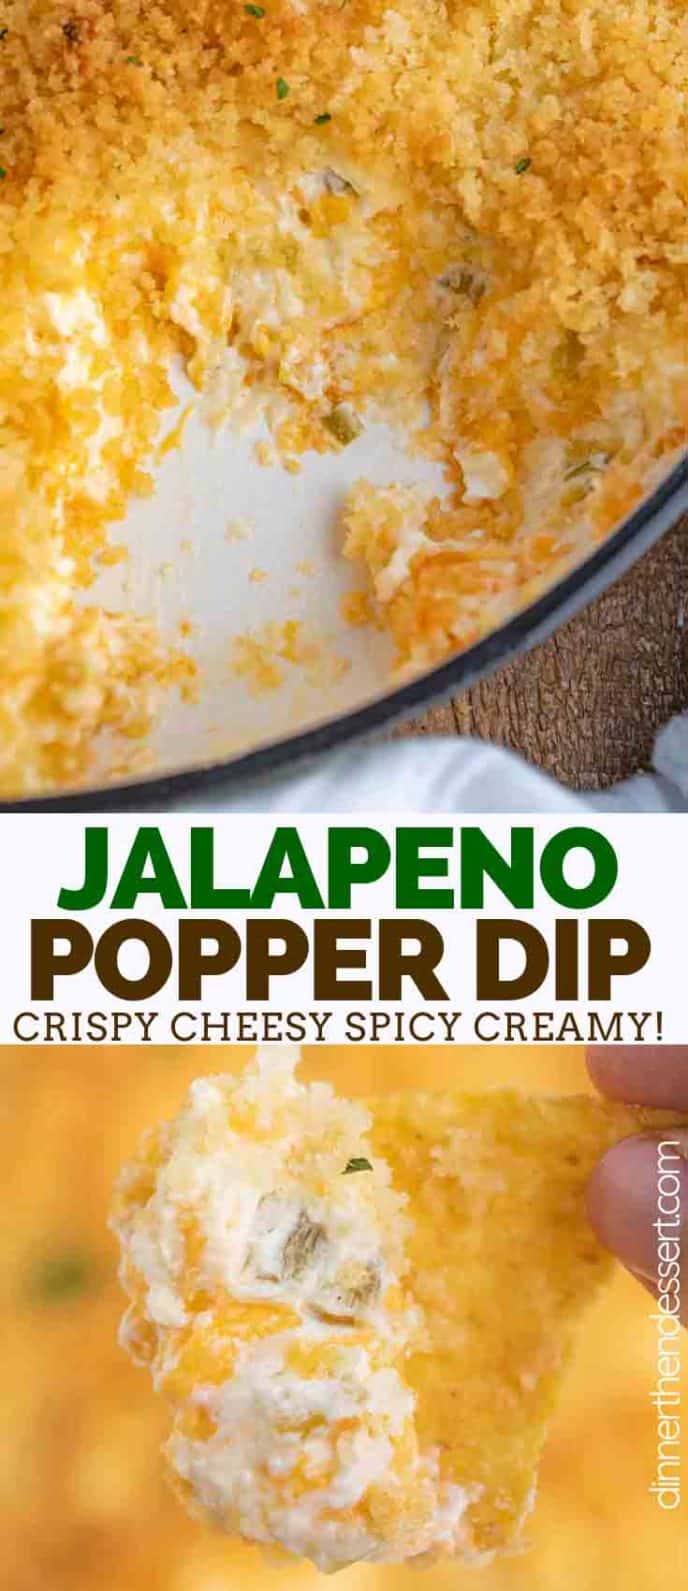 Cheesy Jalapeno Popper Dip